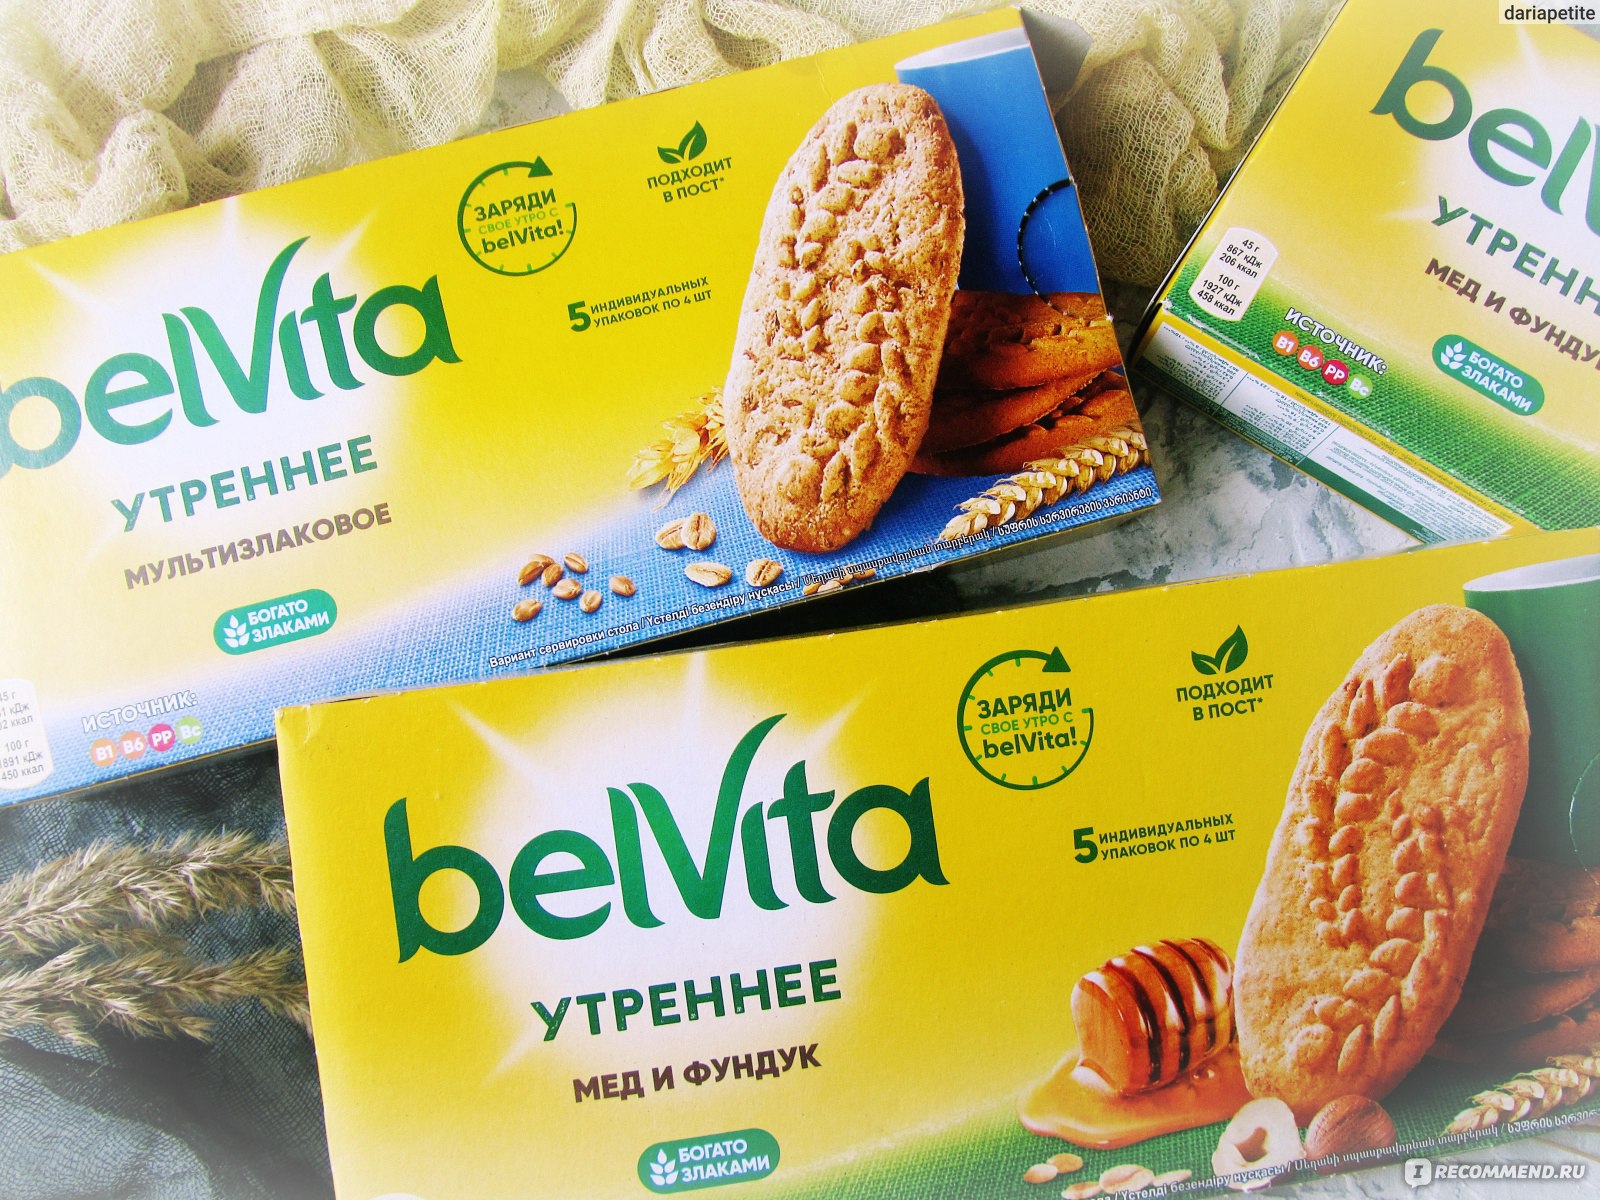 Категория: Разные продукты Бренд: Belvita Тип продукта: Печенье.